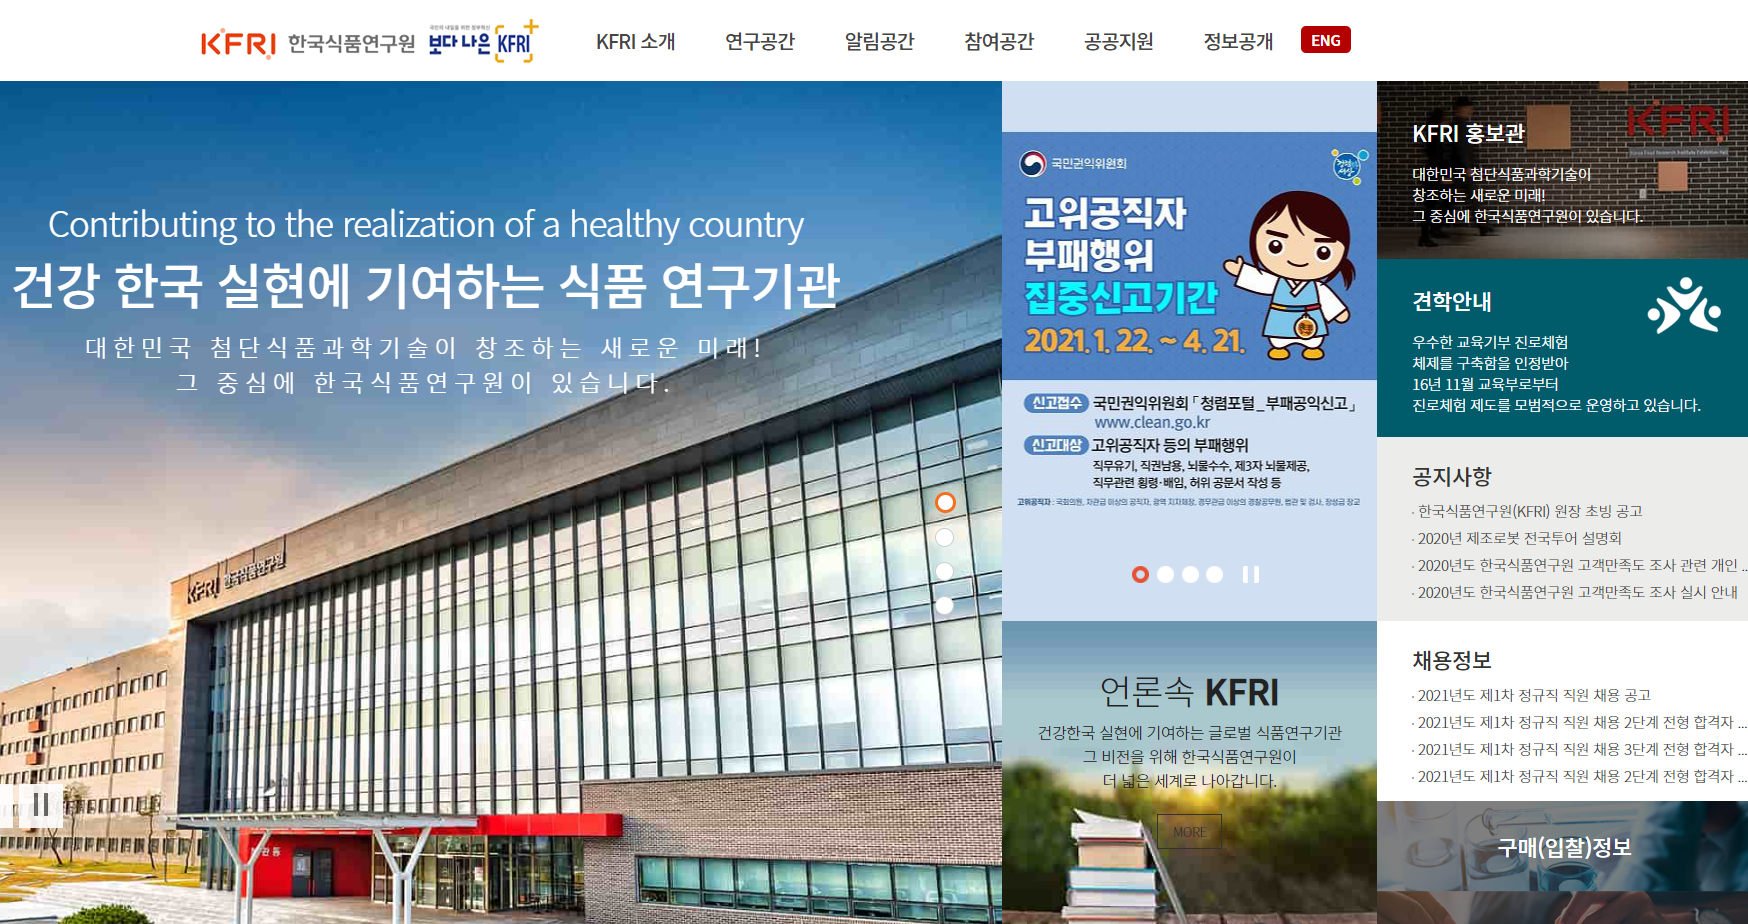 한국식품연구원 대표 홈페이지 스크릿샷